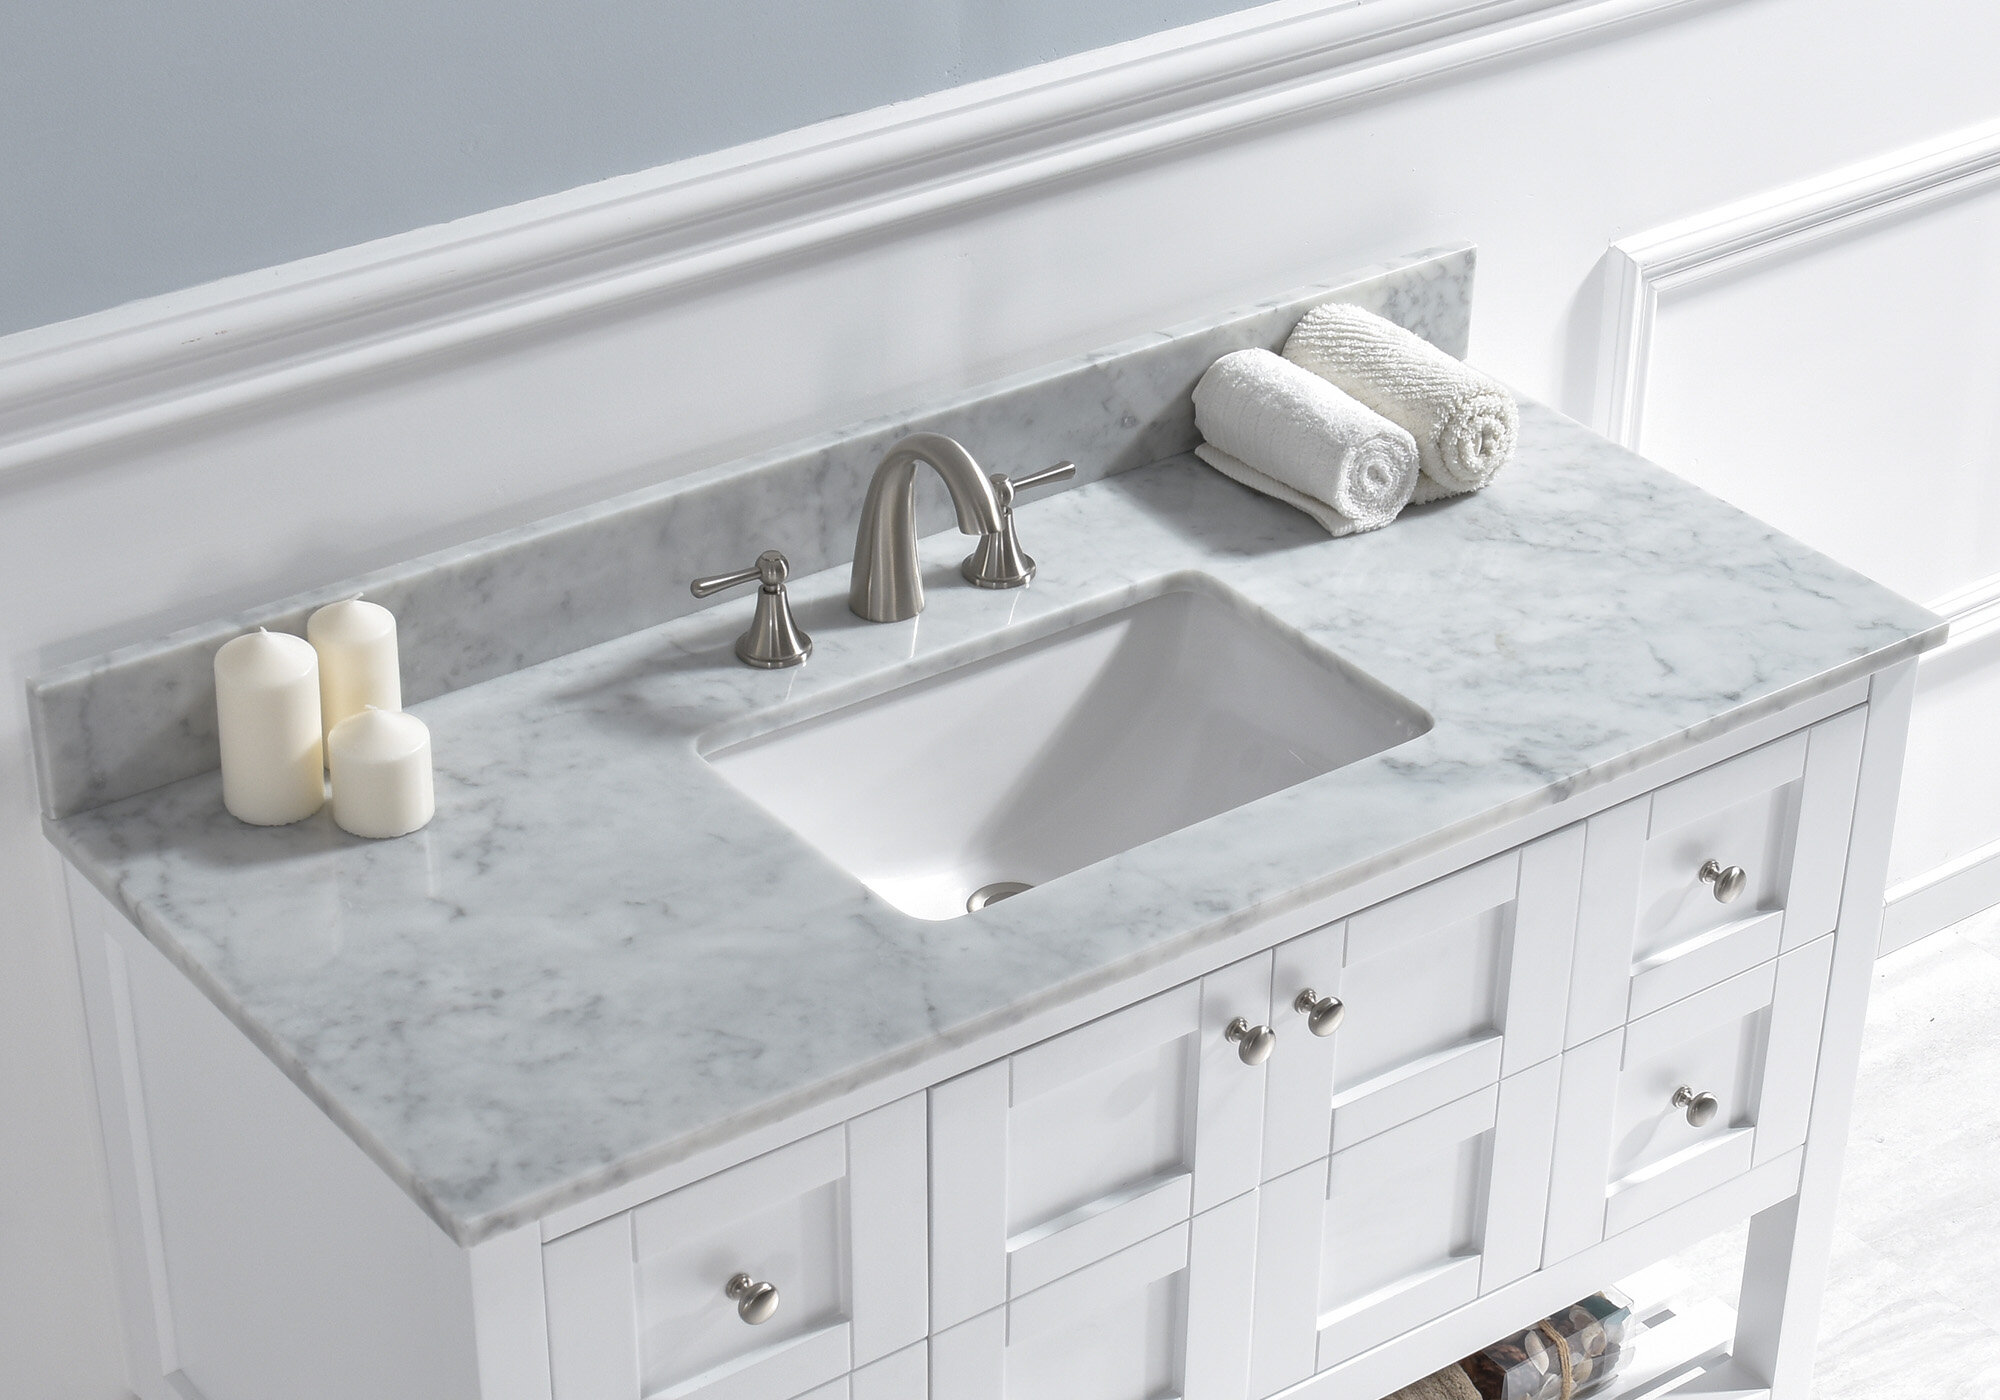 Woodbridge 49 Single Bathroom Vanity Top In Carra White With Sink And Faucet Reviews Wayfair